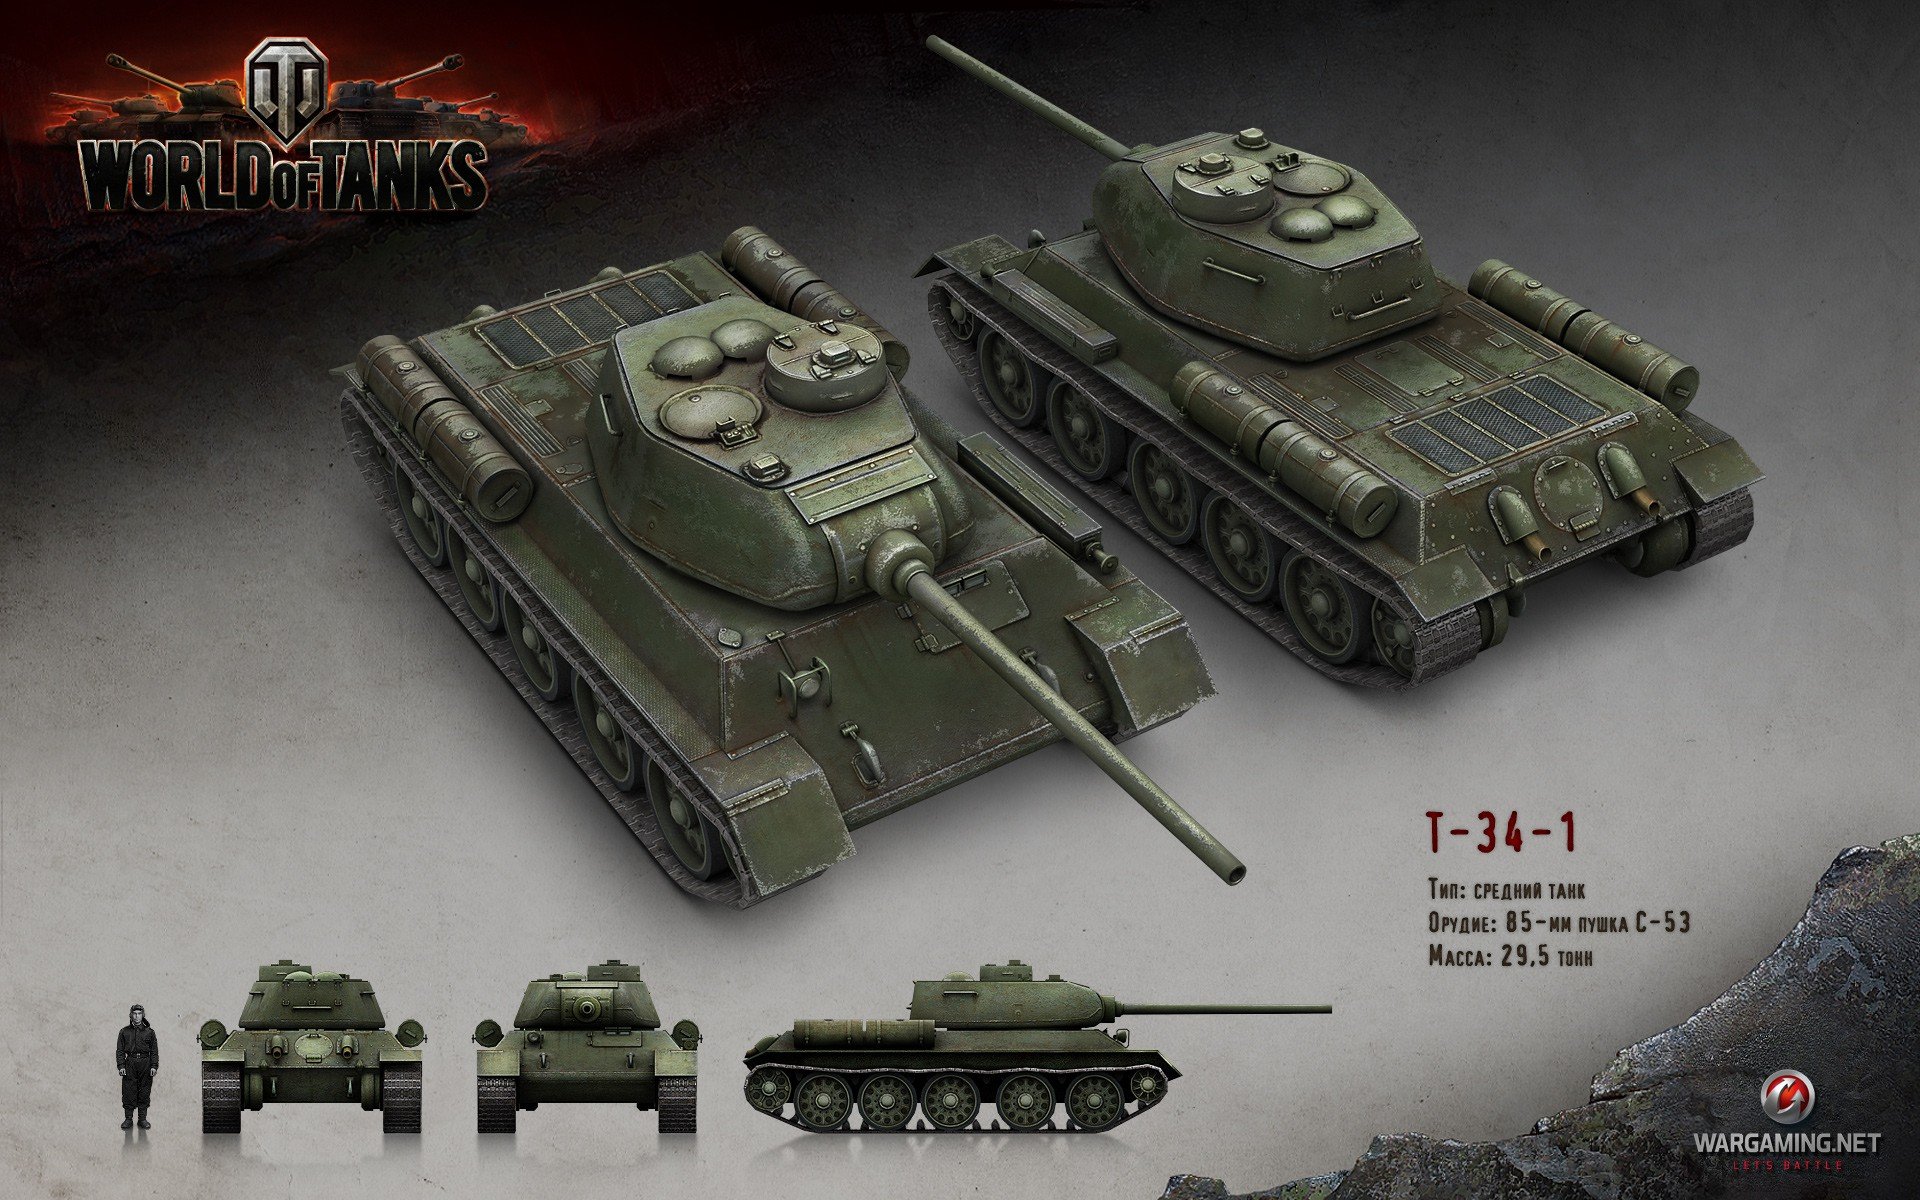 World of Tanks, Tank, Wargaming, T 34 Wallpaper